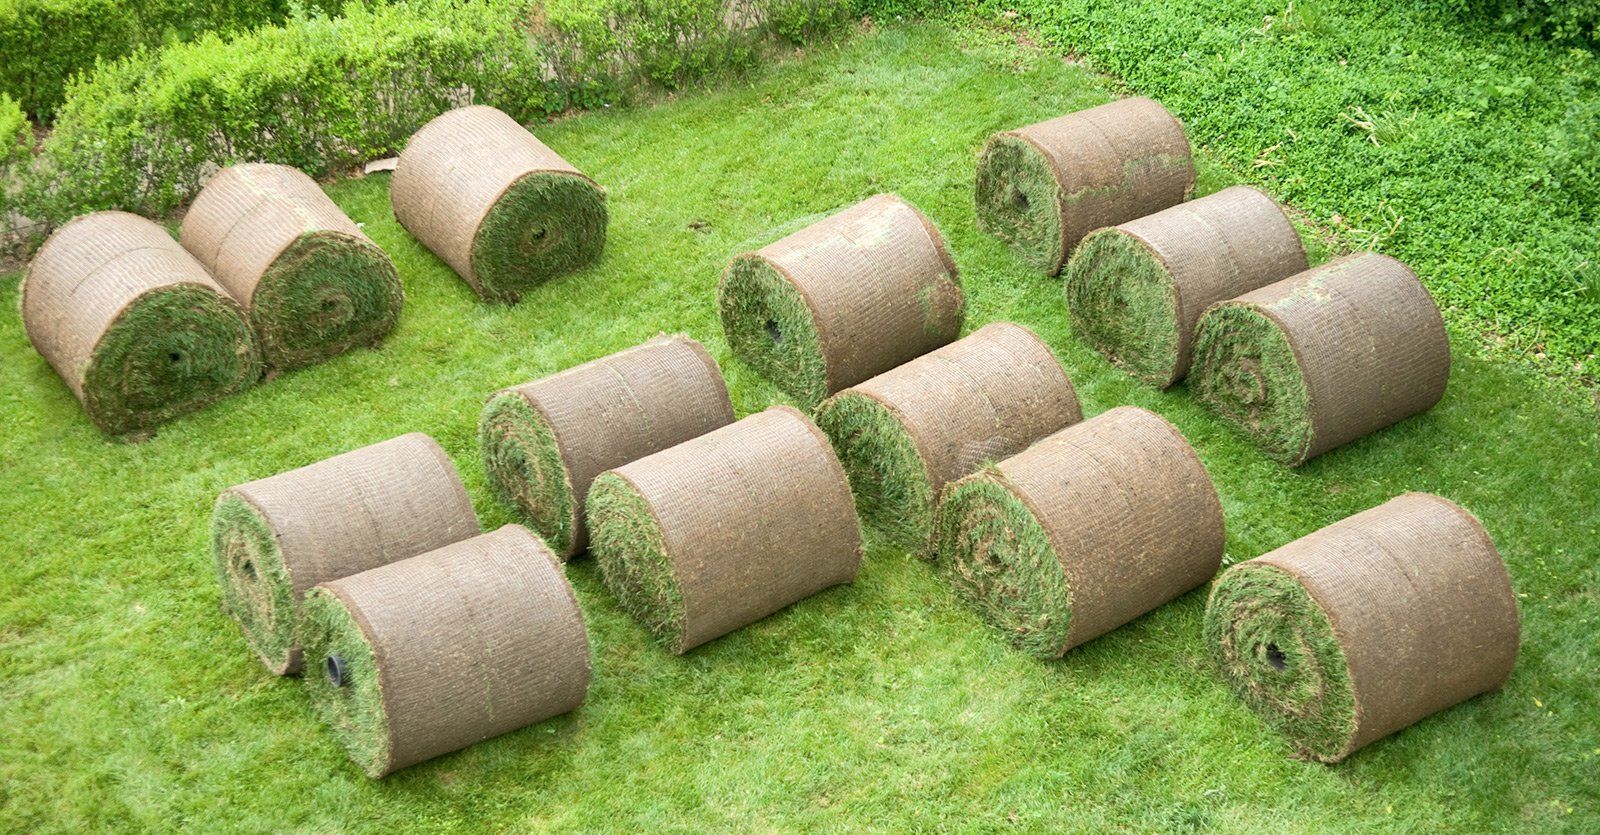 Roll of sod in lawn